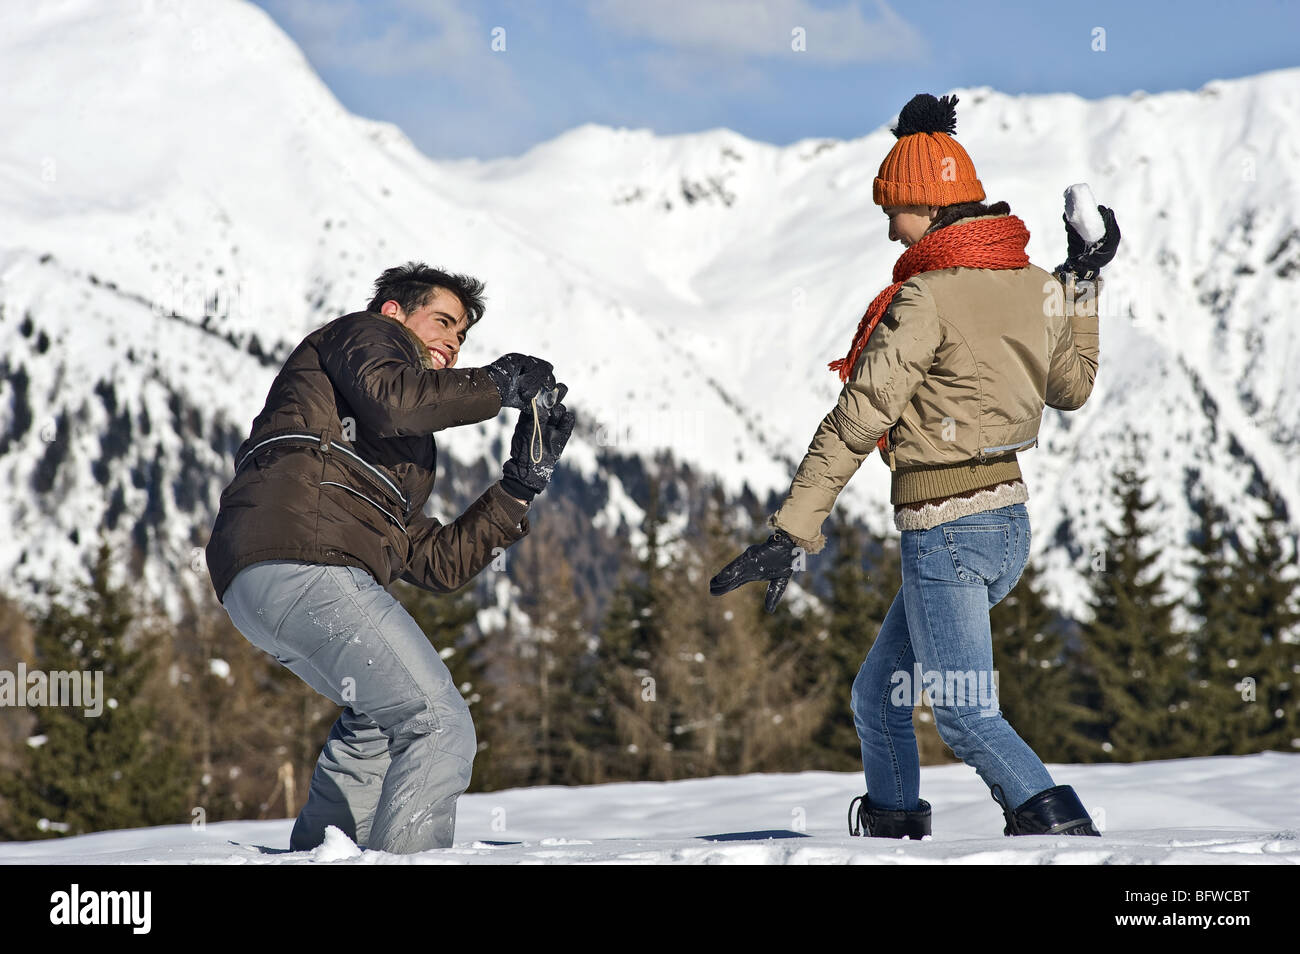 Junger Mann fotografiert junge Frau mit Schneeball im Winter-Szene Stockfoto